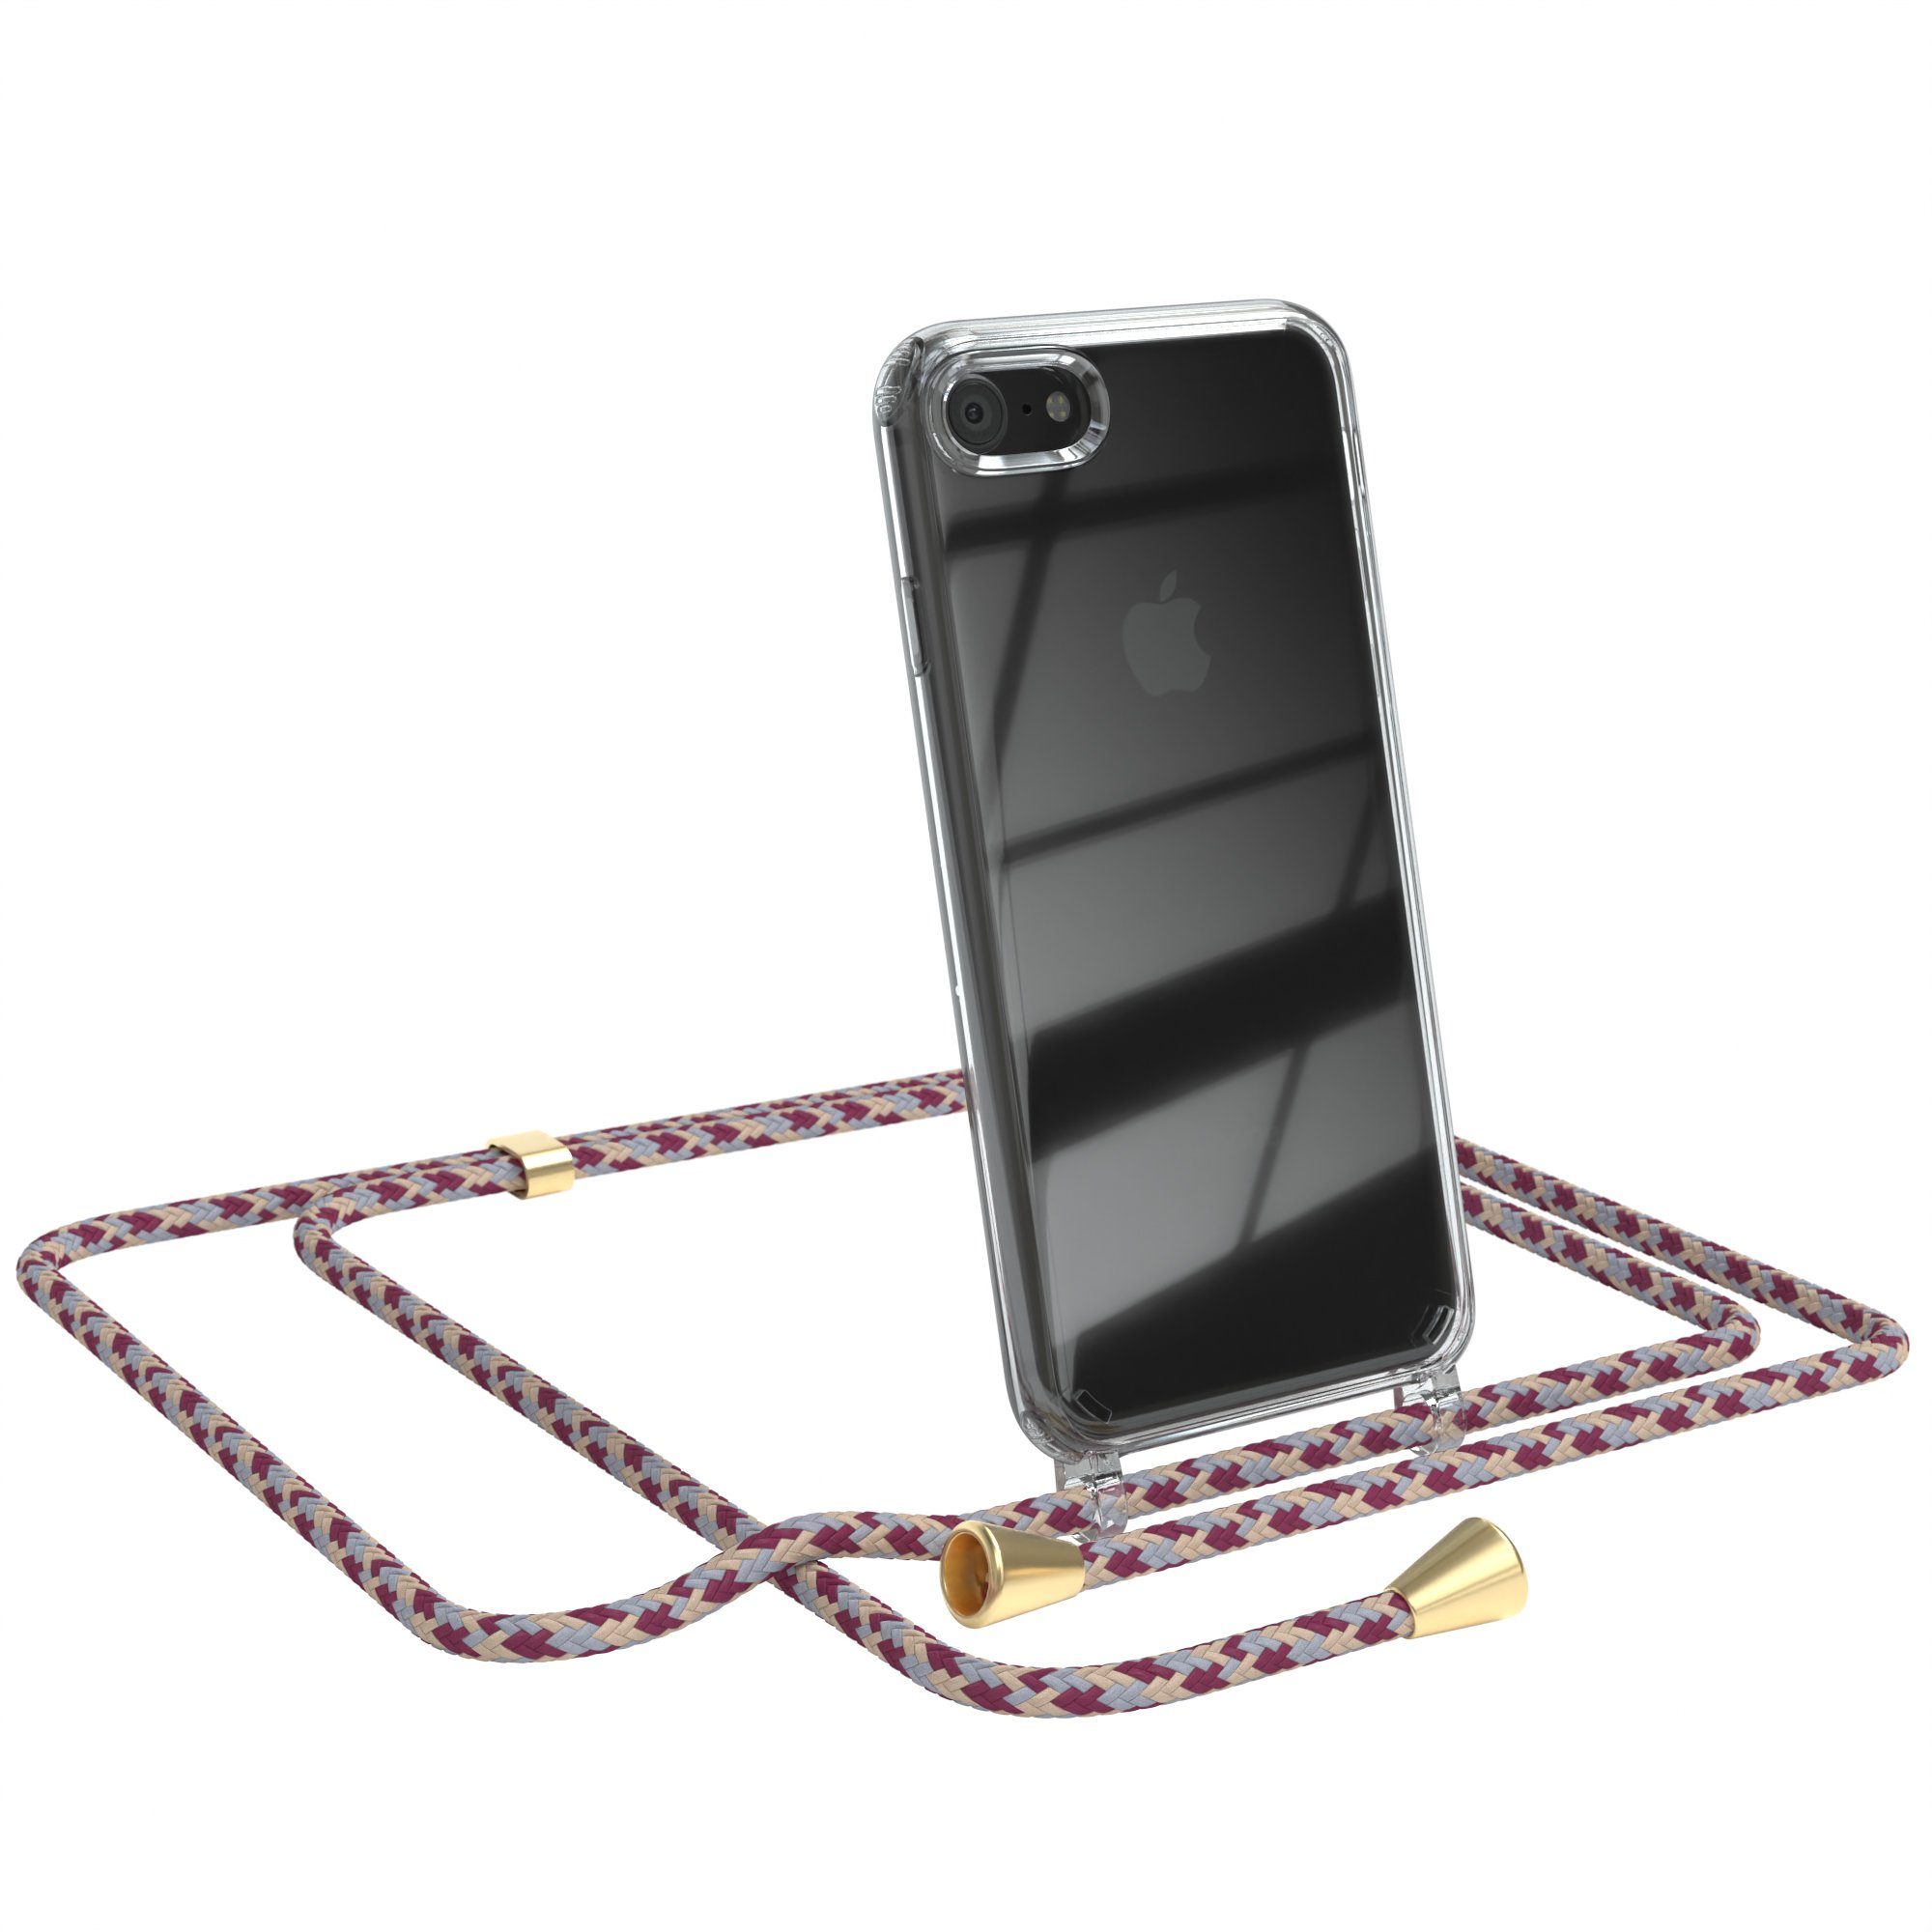 EAZY CASE Handykette Hülle mit Kette für iPhone SE 2022/2020 iPhone 8/7 4,7  Zoll, Hülle mit Umhängeband Bumper Case Hülle mit Band Rot Beige Camouflage